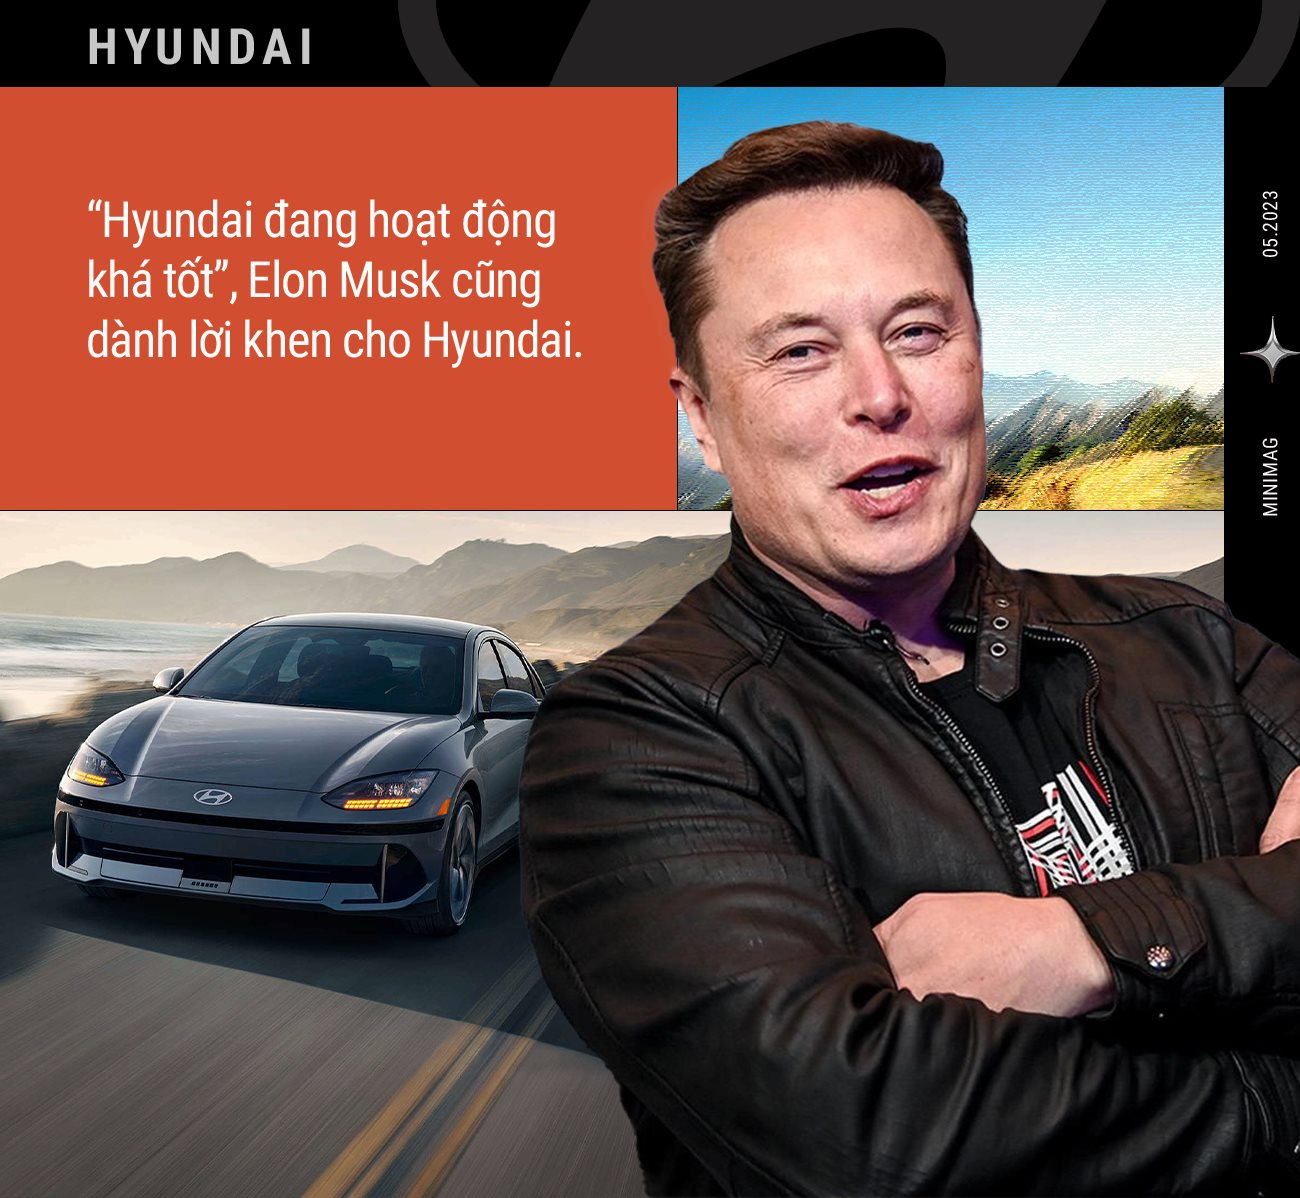 Sự trỗi dậy của Huyndai: Từ hãng xe bảo thủ, chuyên đi theo sau người khác giờ vươn lên thành thế lực đáng gờm, đến Elon Musk cũng phải kiêng nể - Ảnh 4.